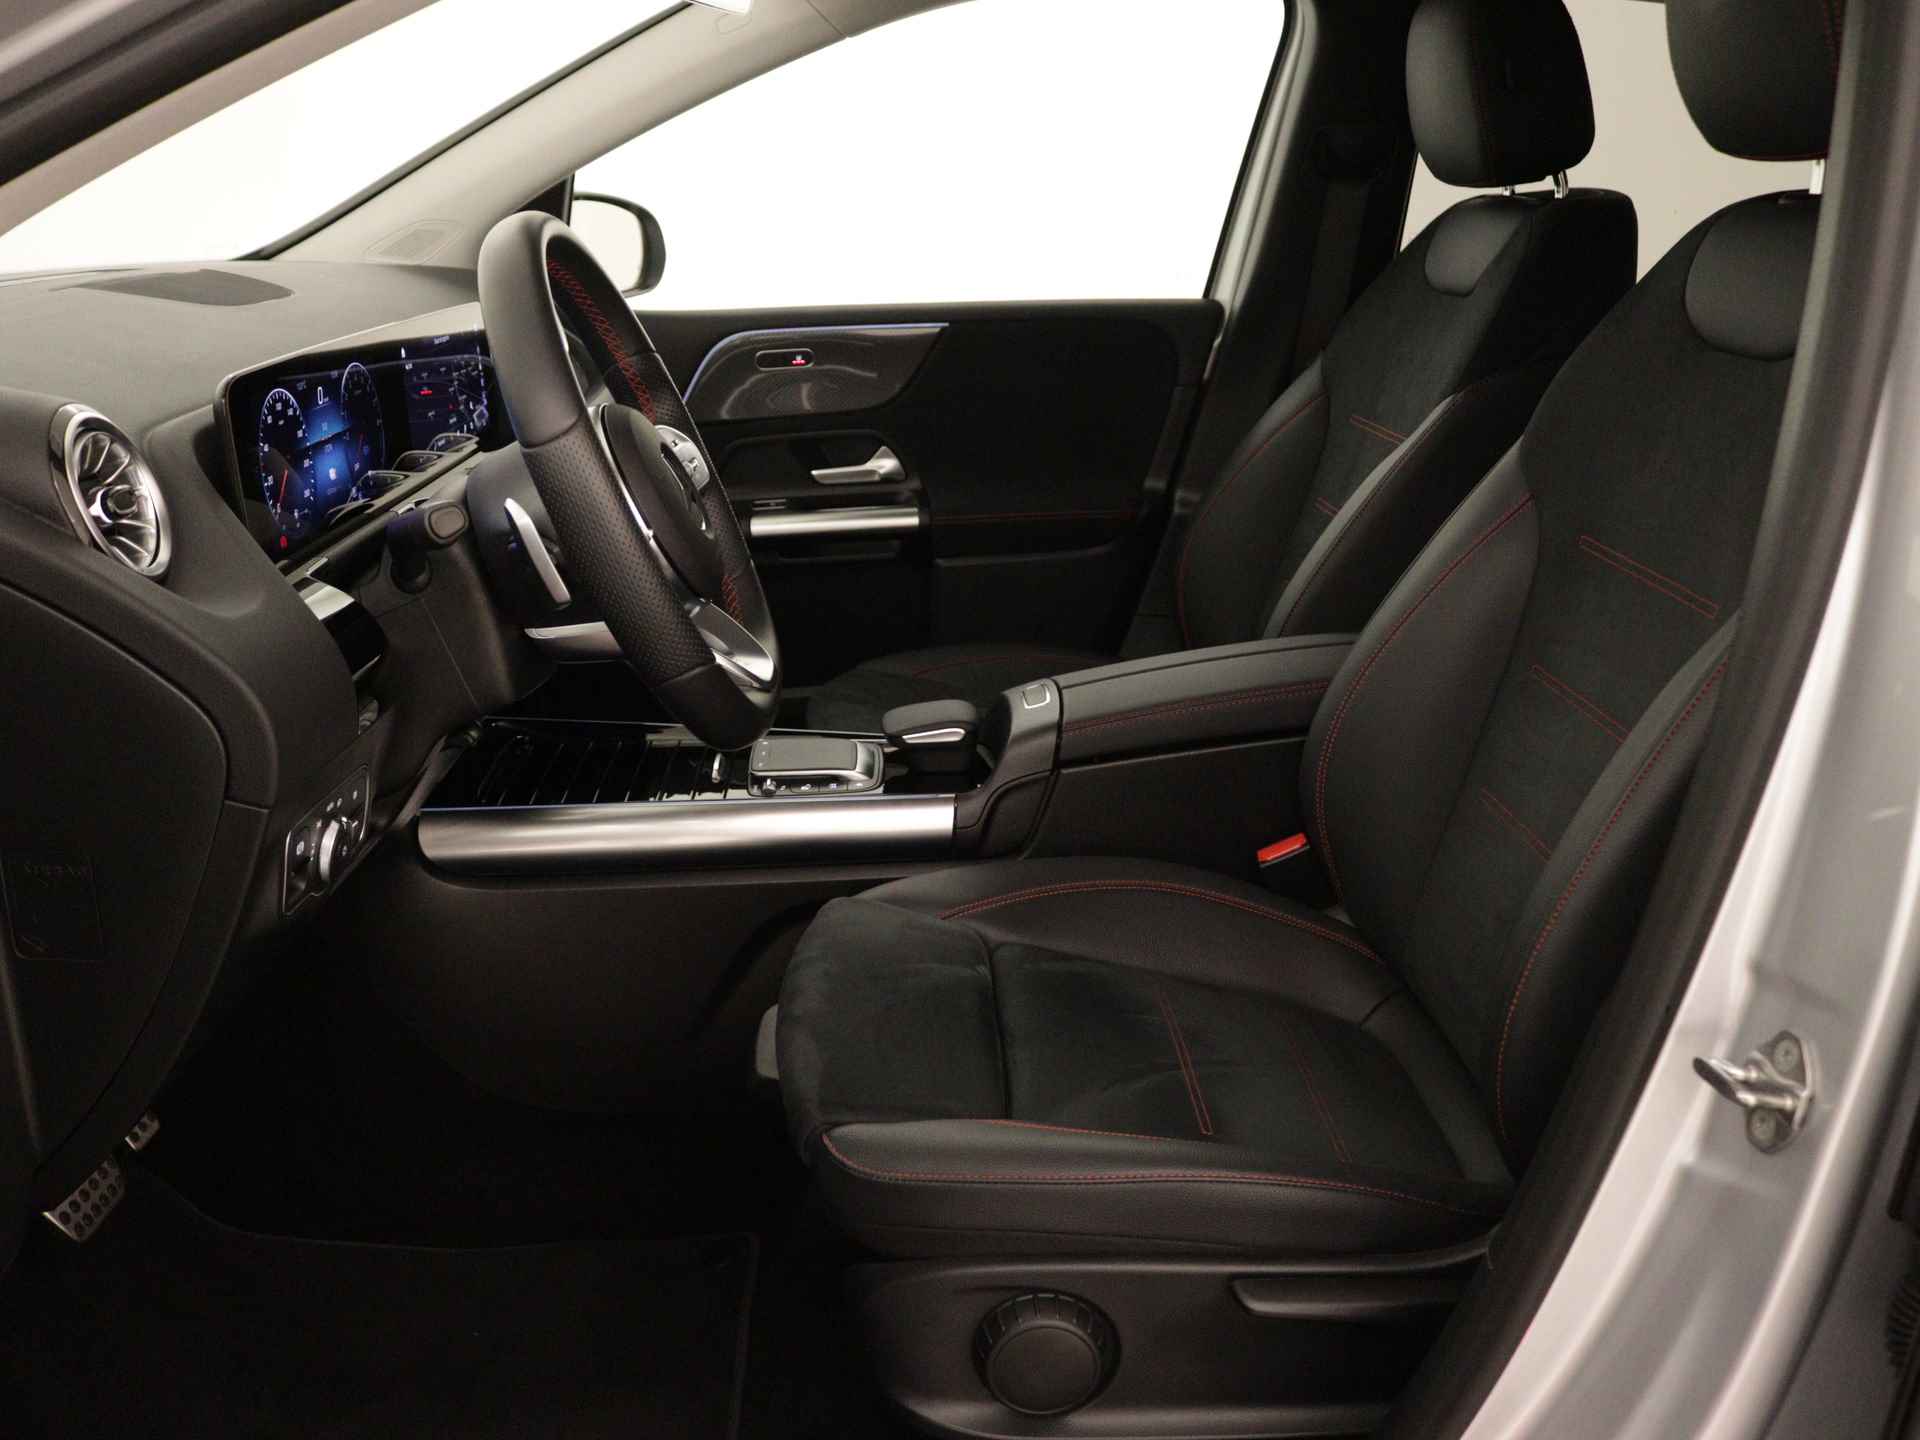 Mercedes-Benz B-Klasse 250 e AMG Line Limited Multispaaks lichtmetalen velgen | MBUX wide screen | Navigatie | Parking support | Inclusief 24 maanden Mercedes-Benz Certified garantie voor Europa. | - 20/45